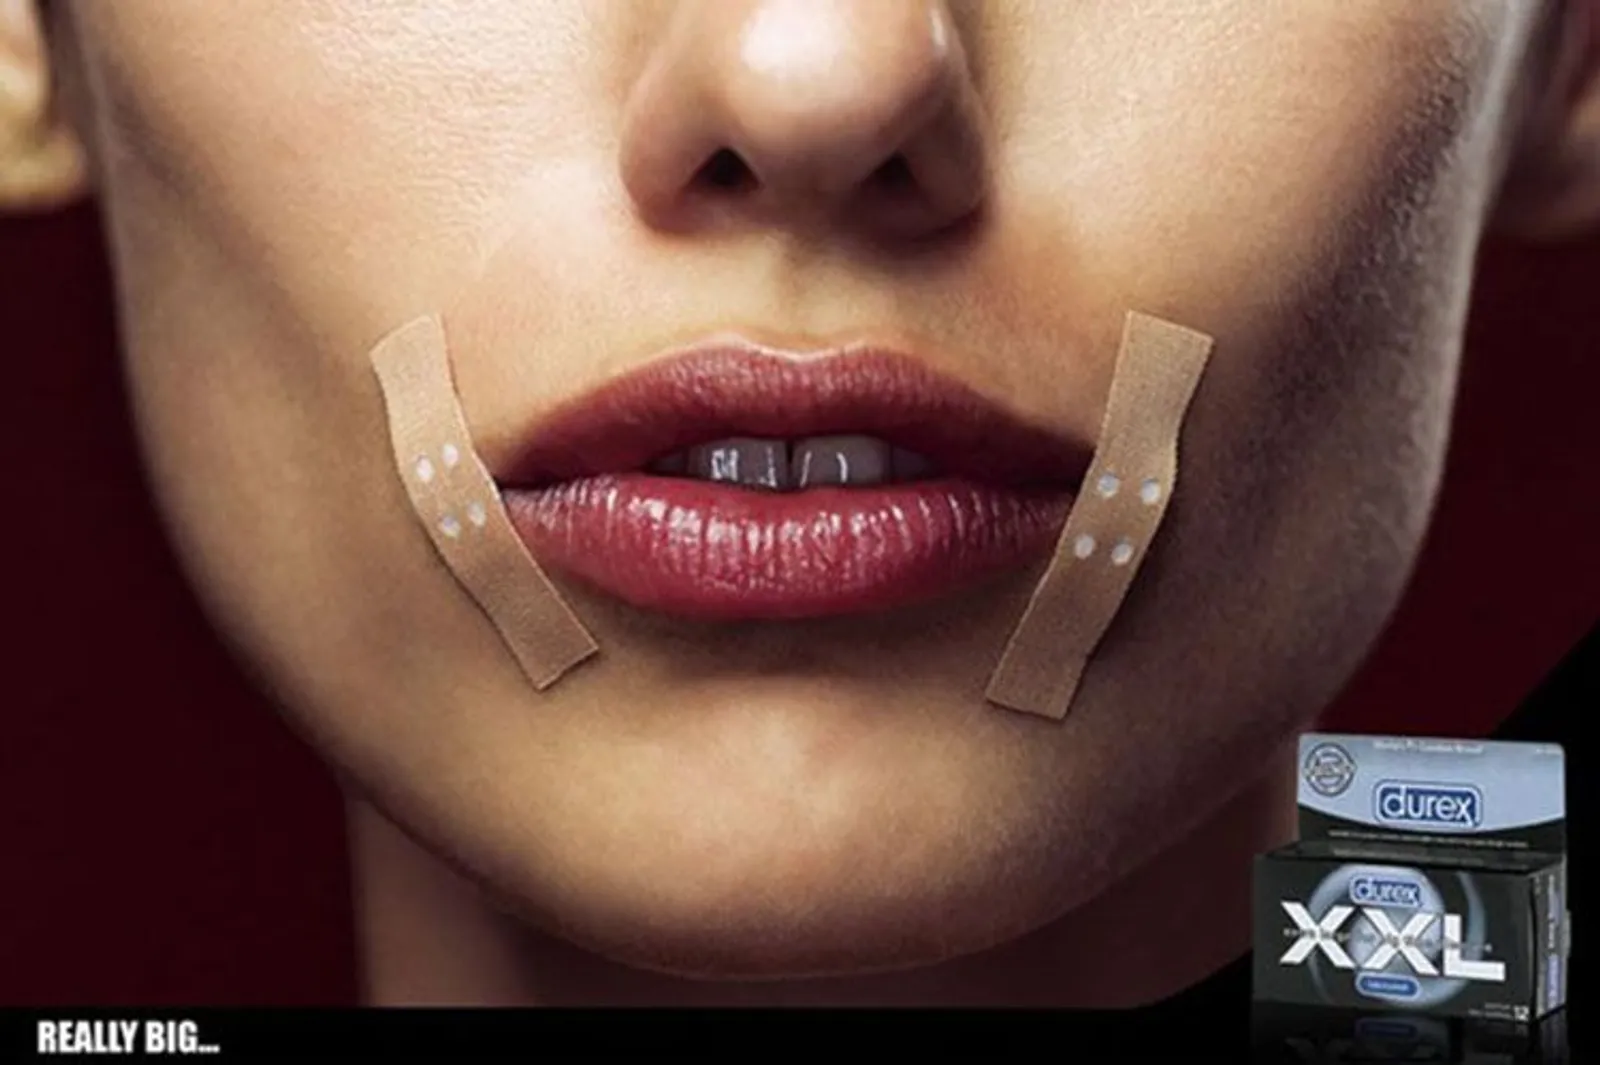 Lucu Hingga Vulgar, Bisa Temukan Makna 10 Iklan Kondom yang Unik Ini?